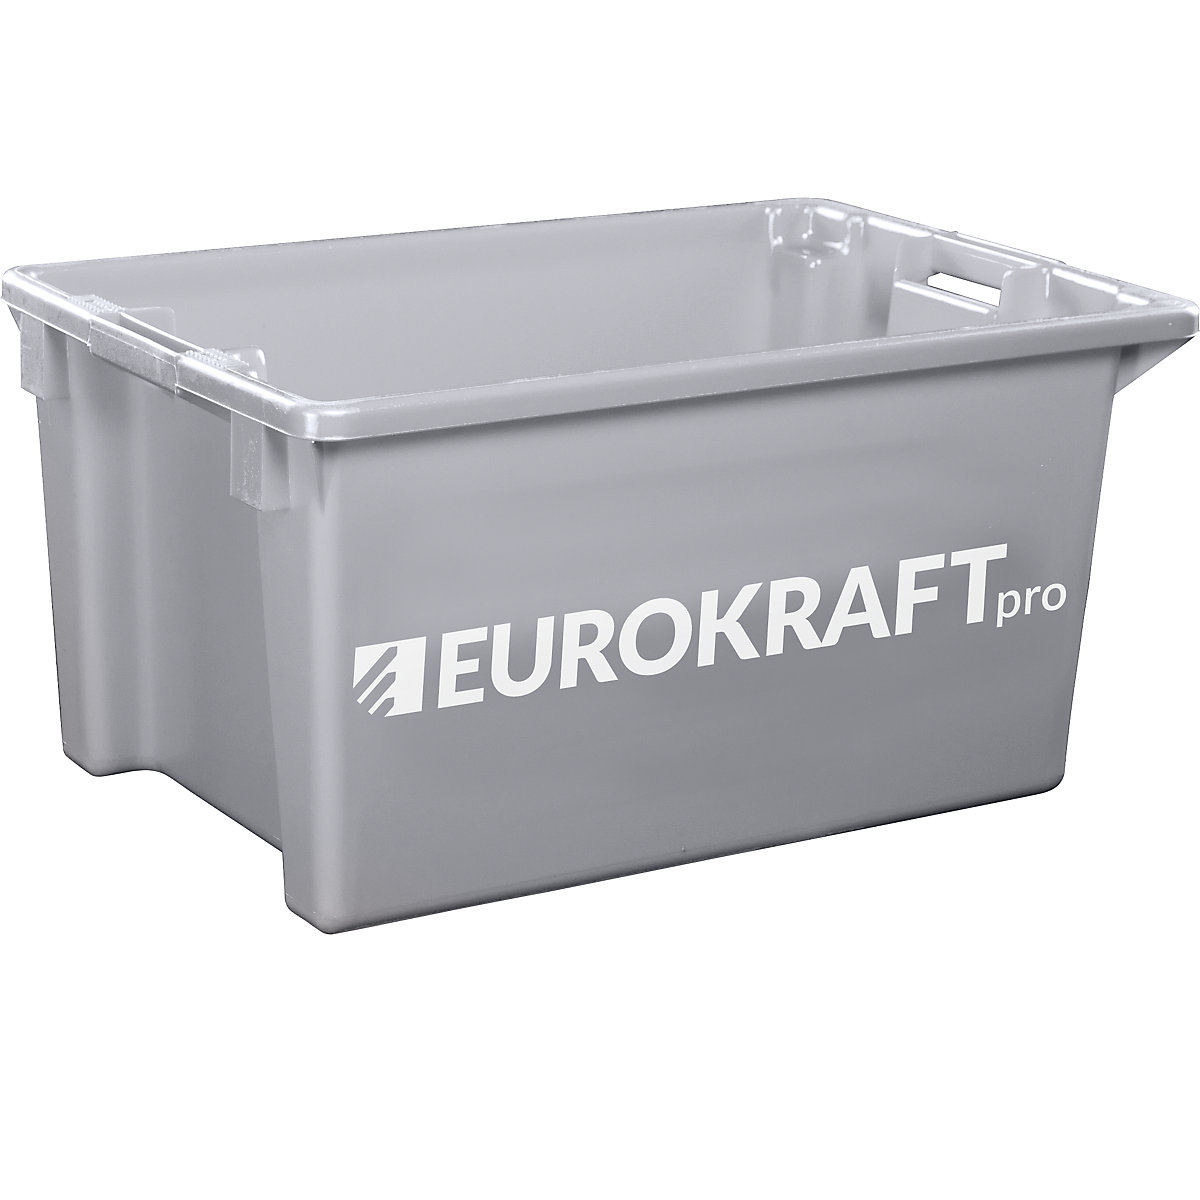 EUROKRAFTpro Drehstapelbehälter aus lebensmittelechtem Polypropylen, Inhalt 70 Liter, VE 2 Stk, Wände und Boden geschlossen, grau